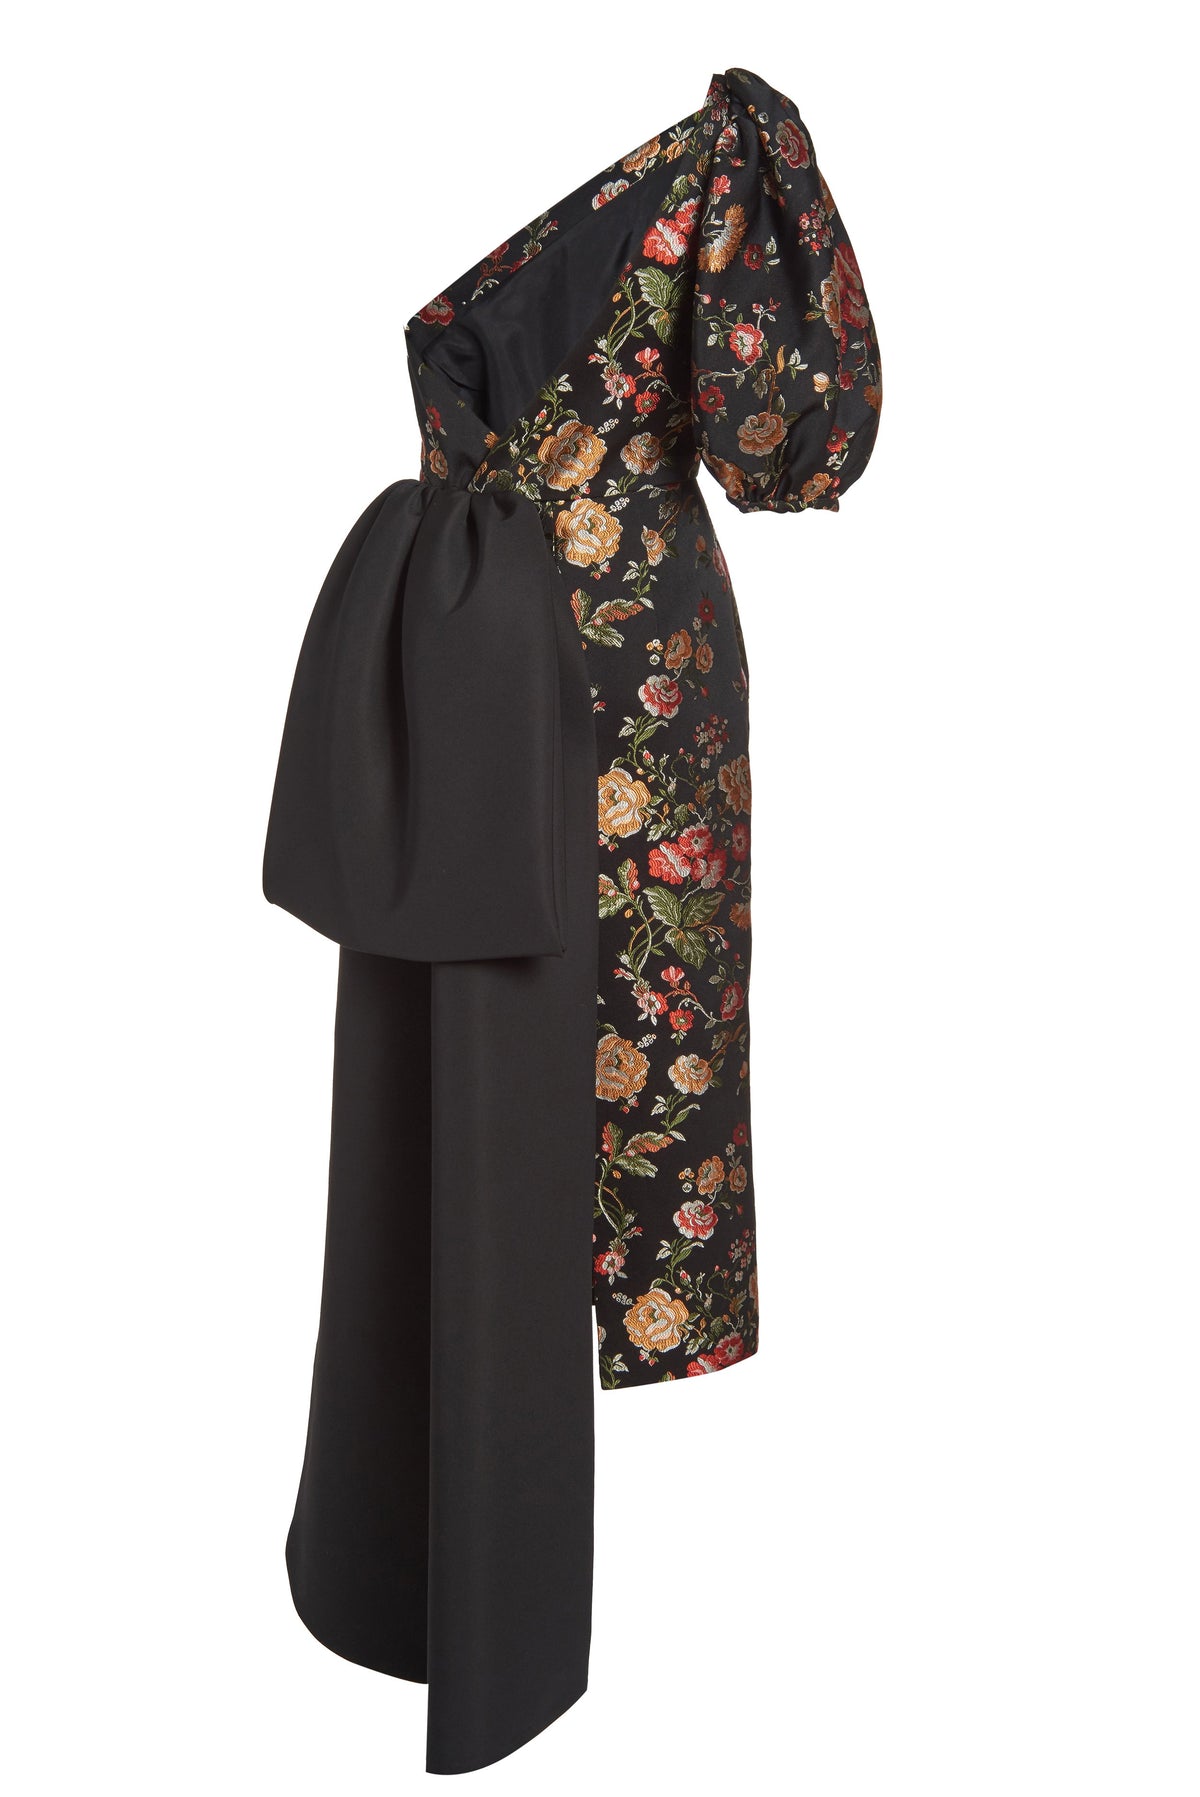 Drusa Black Floral Brocade One Shoulder Dress with Train